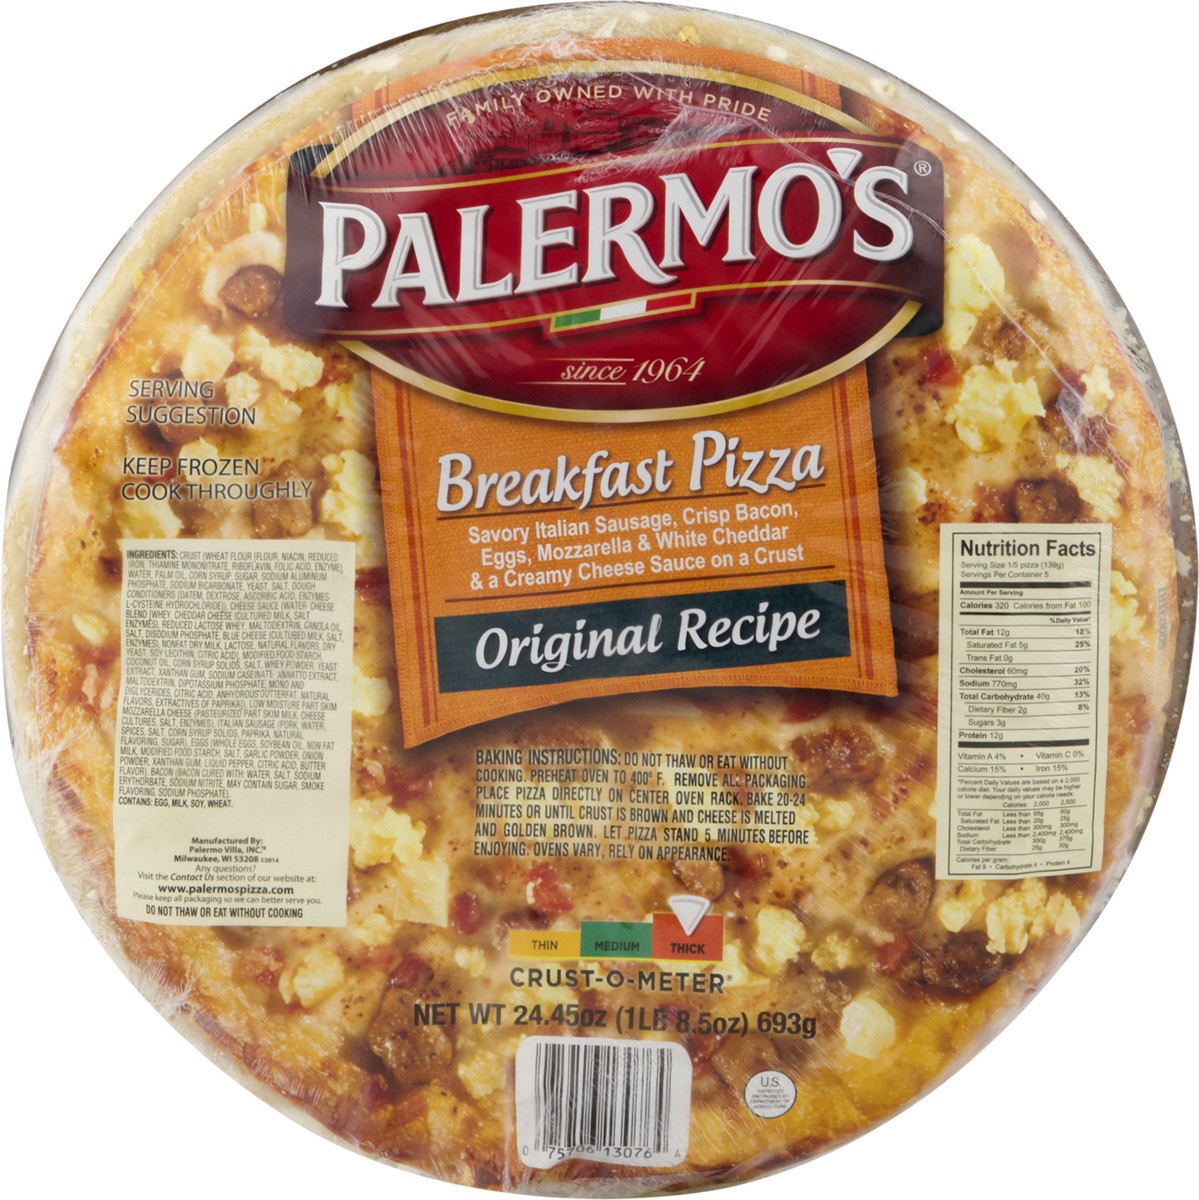 slide 10 of 11, Palermo's Breakfast Pizza, Original Recipe, Thick, 24.45 oz